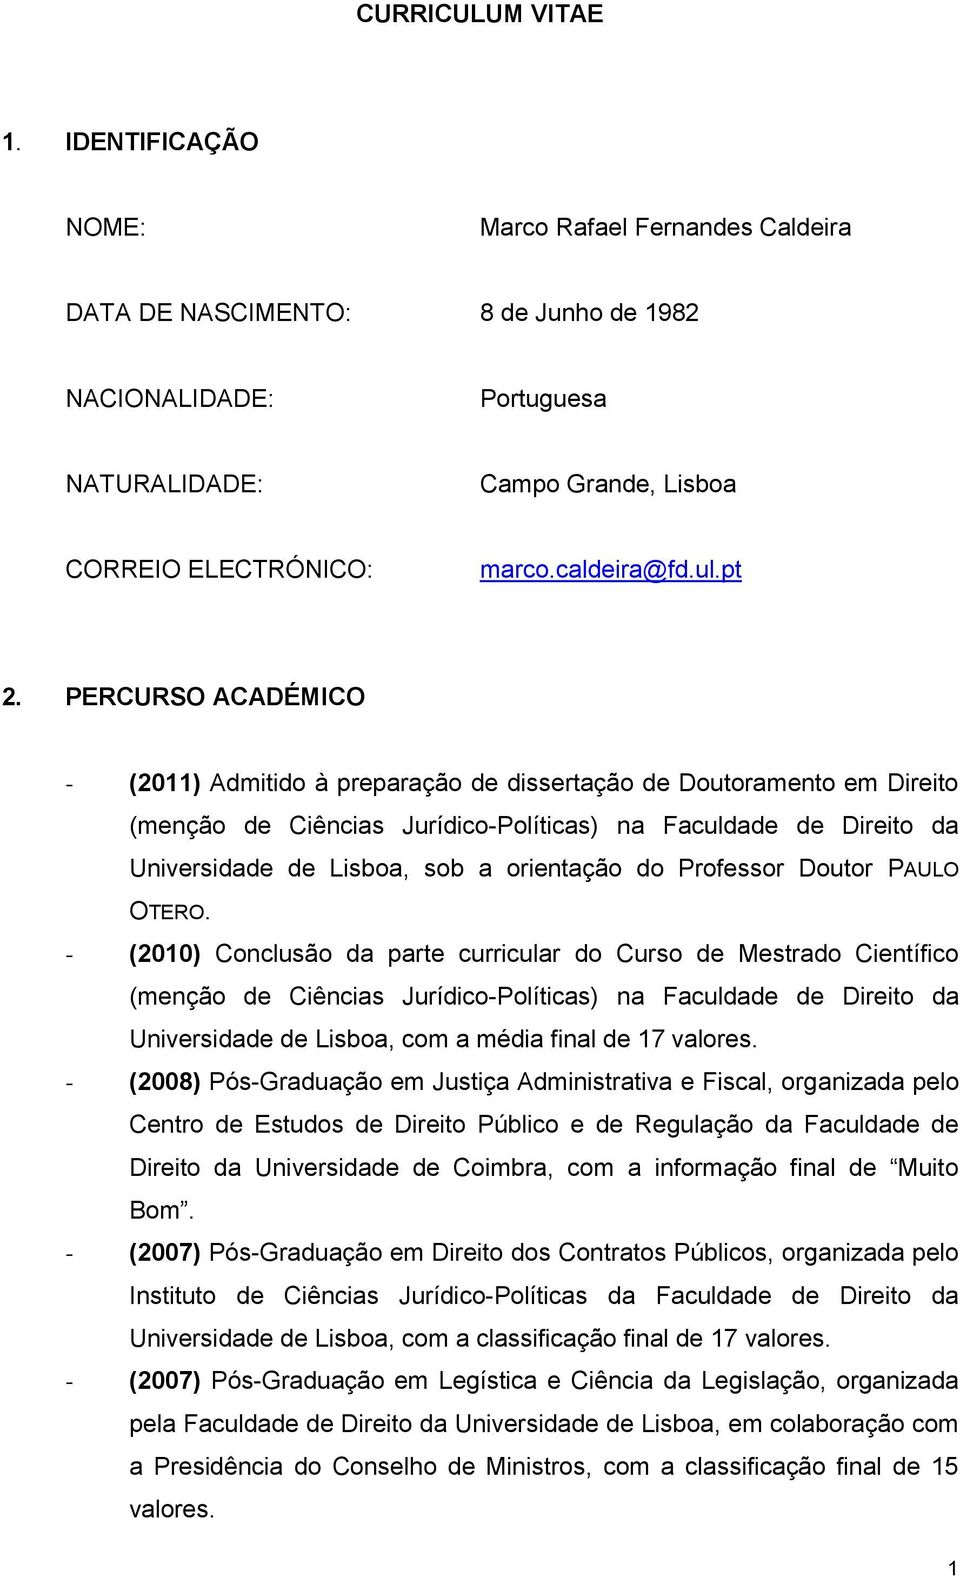 PERCURSO ACADÉMICO - (2011) Admitido à preparação de dissertação de Doutoramento em Direito (menção de Ciências Jurídico-Políticas) na Faculdade de Direito da Universidade de Lisboa, sob a orientação